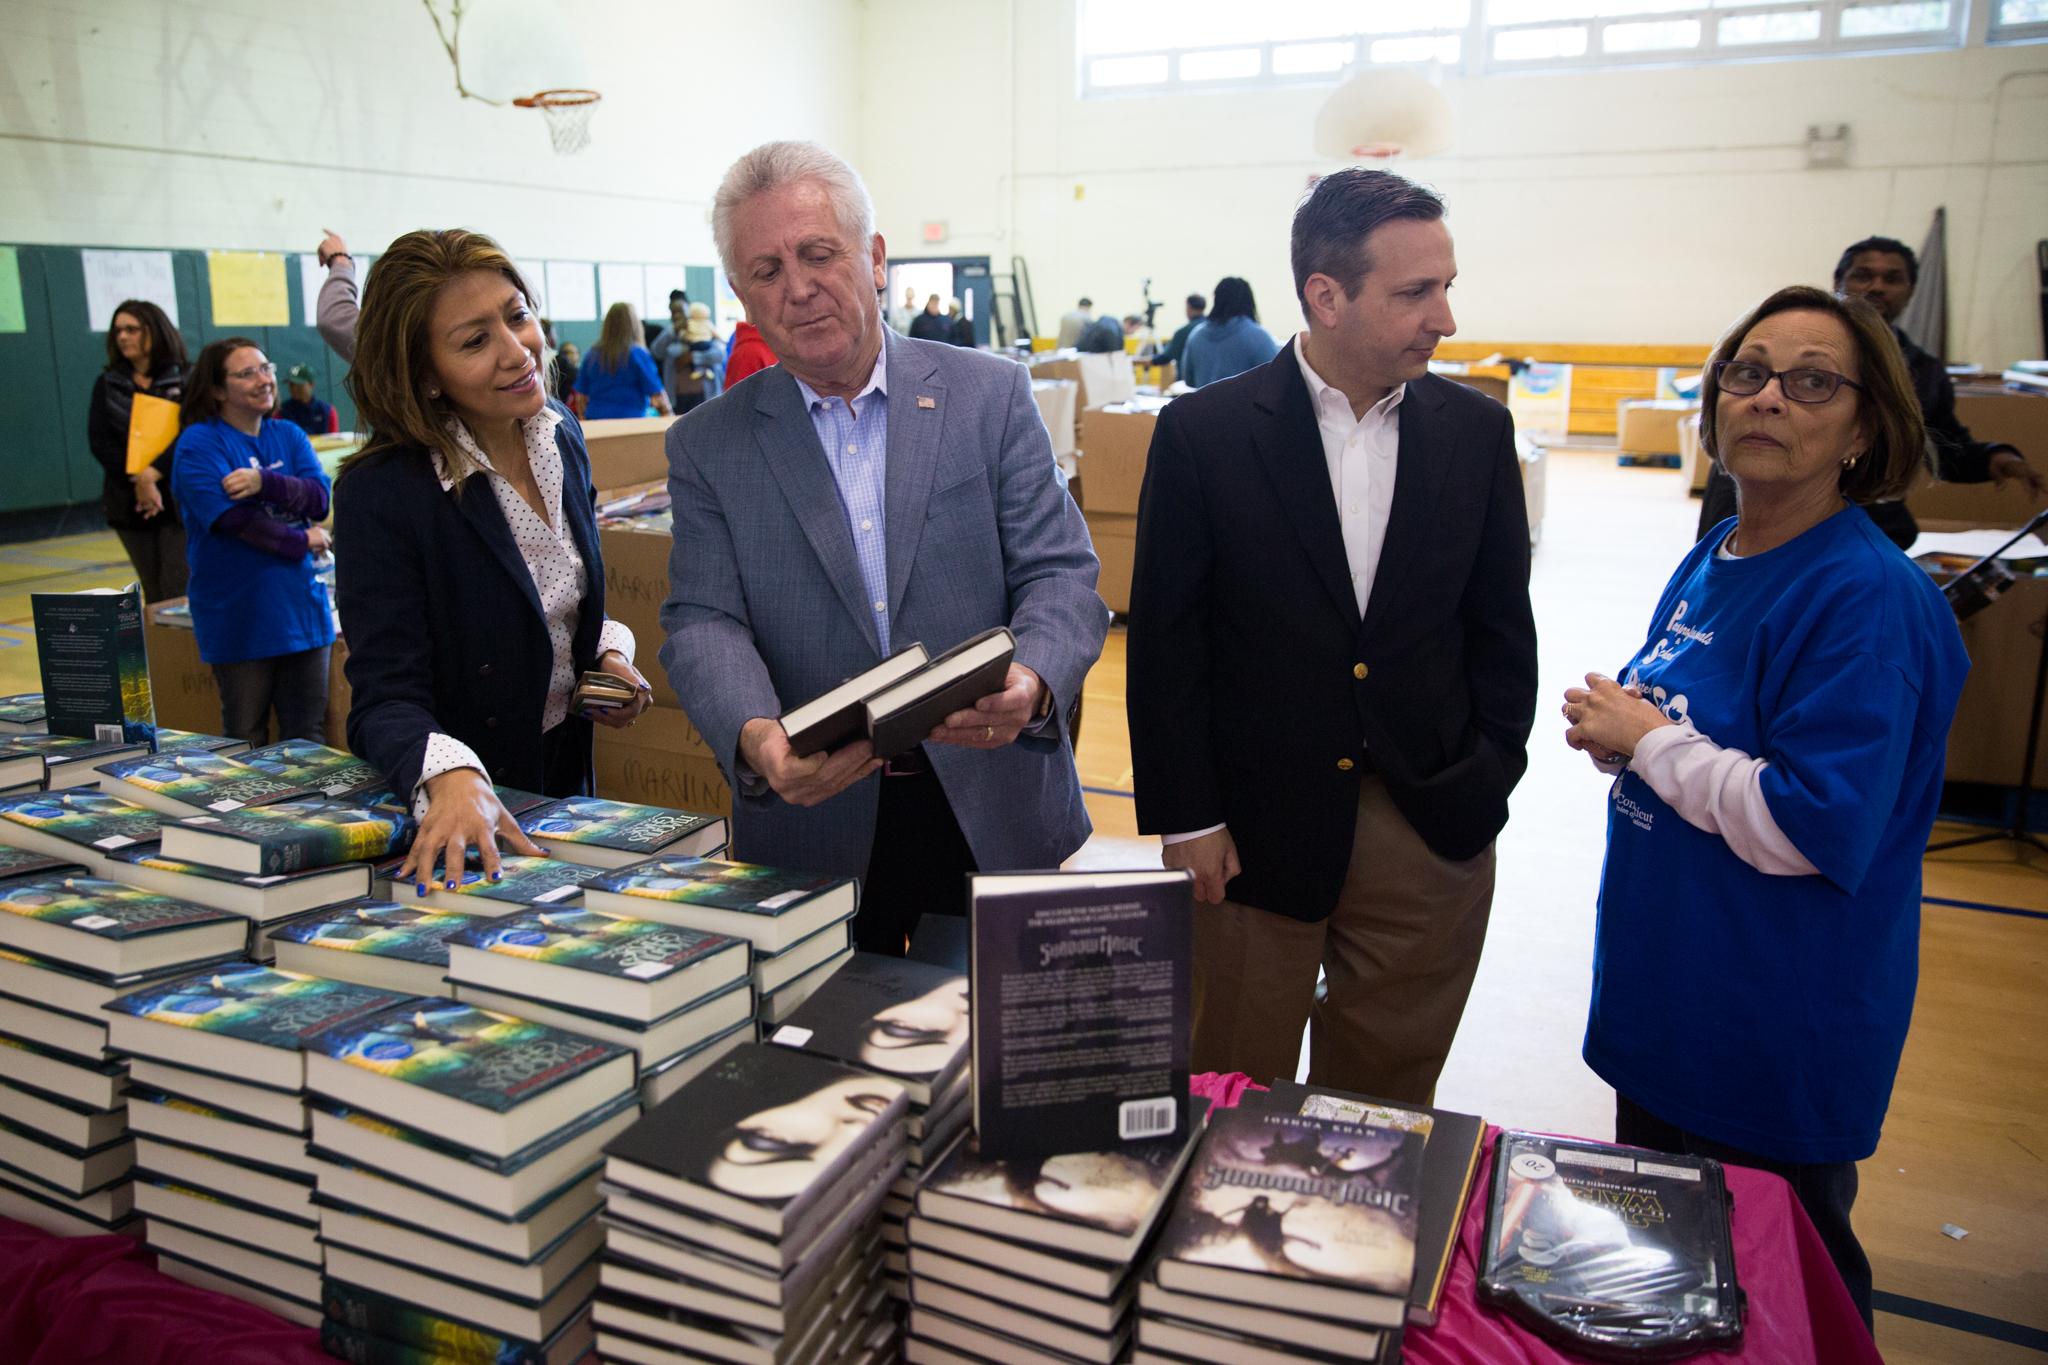 50,000 libros gratuitos en inglés y español para ser distribuidos en las escuelas de Norwalk